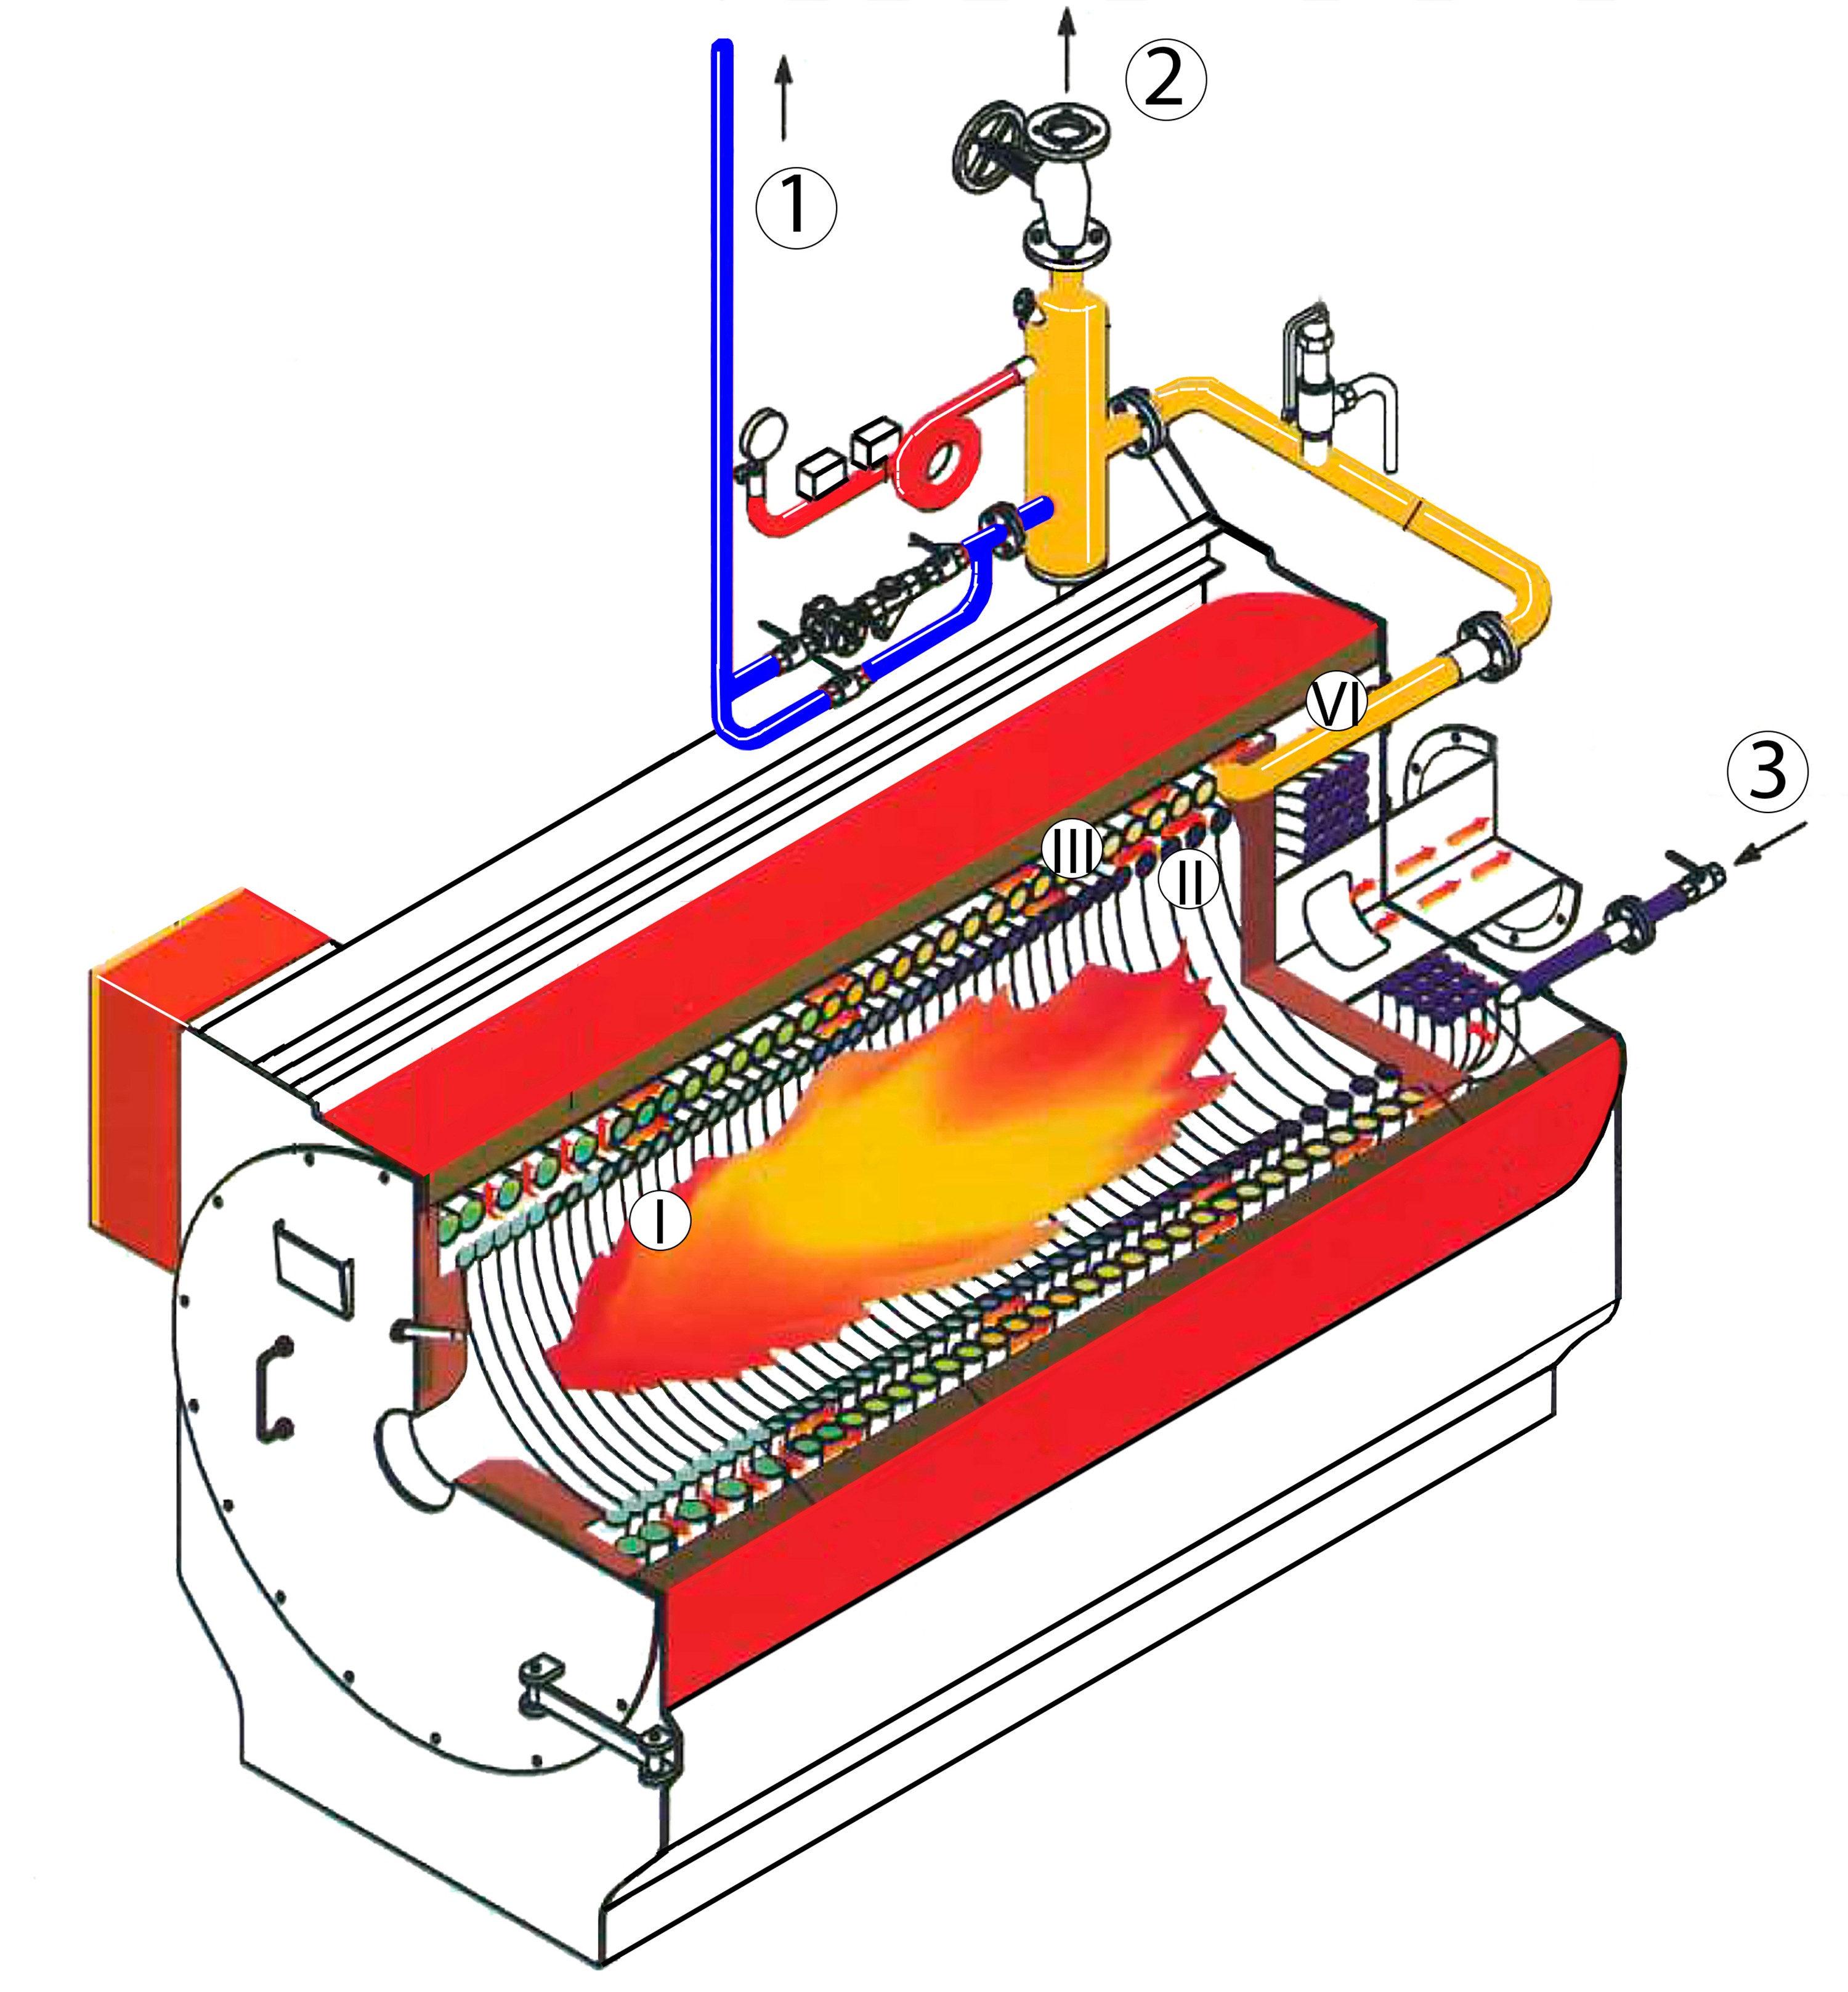 Принцип работы газового котла отопления, типы, кпд, устройство, схема